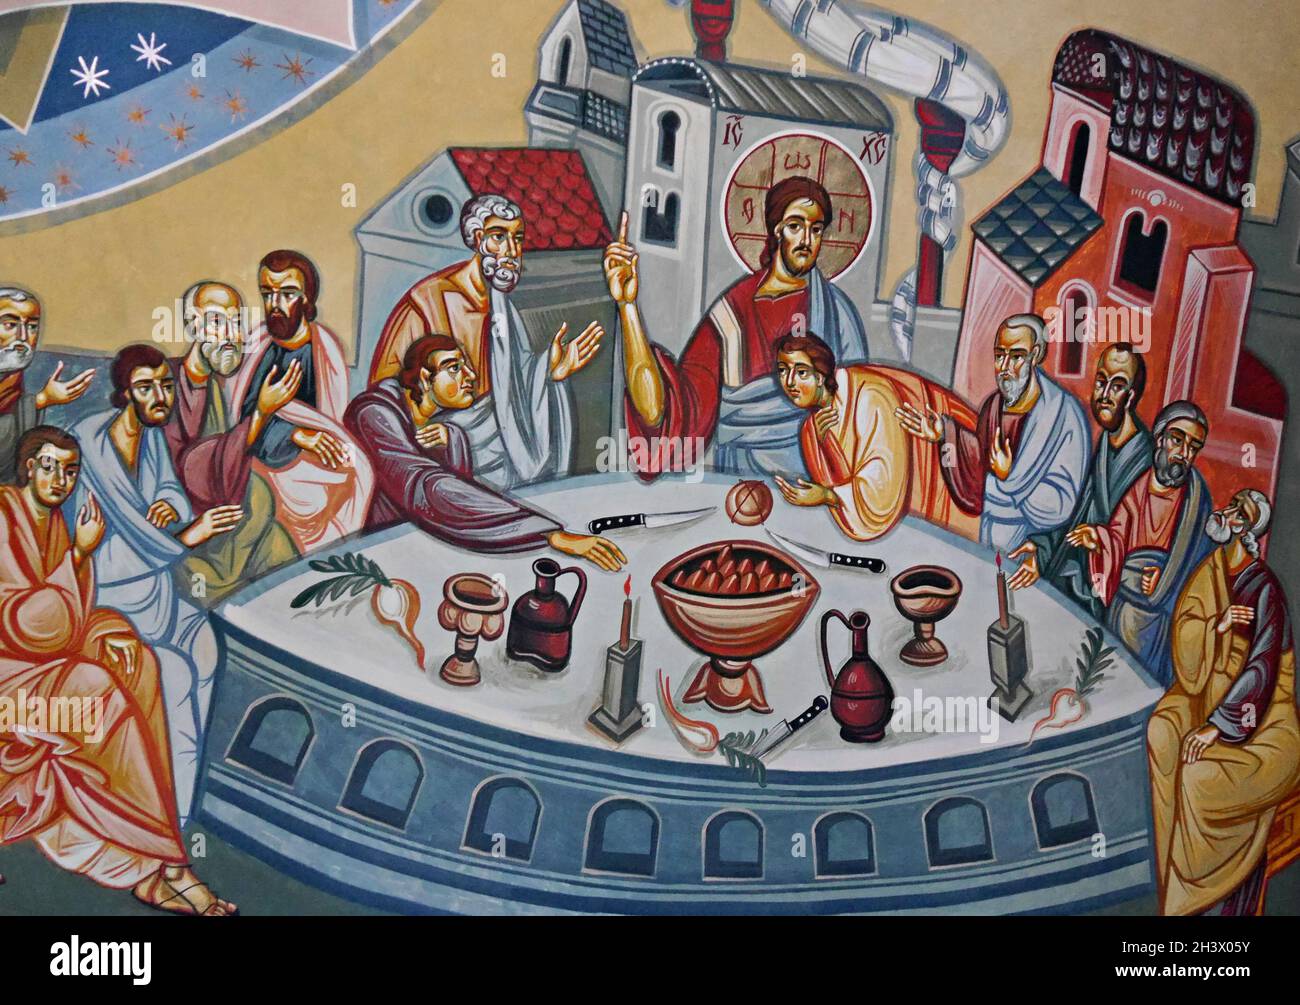 La fresque de la Cène, monastère d'Orlat, Transylvanie, Roumanie.Photo de haute qualité Banque D'Images